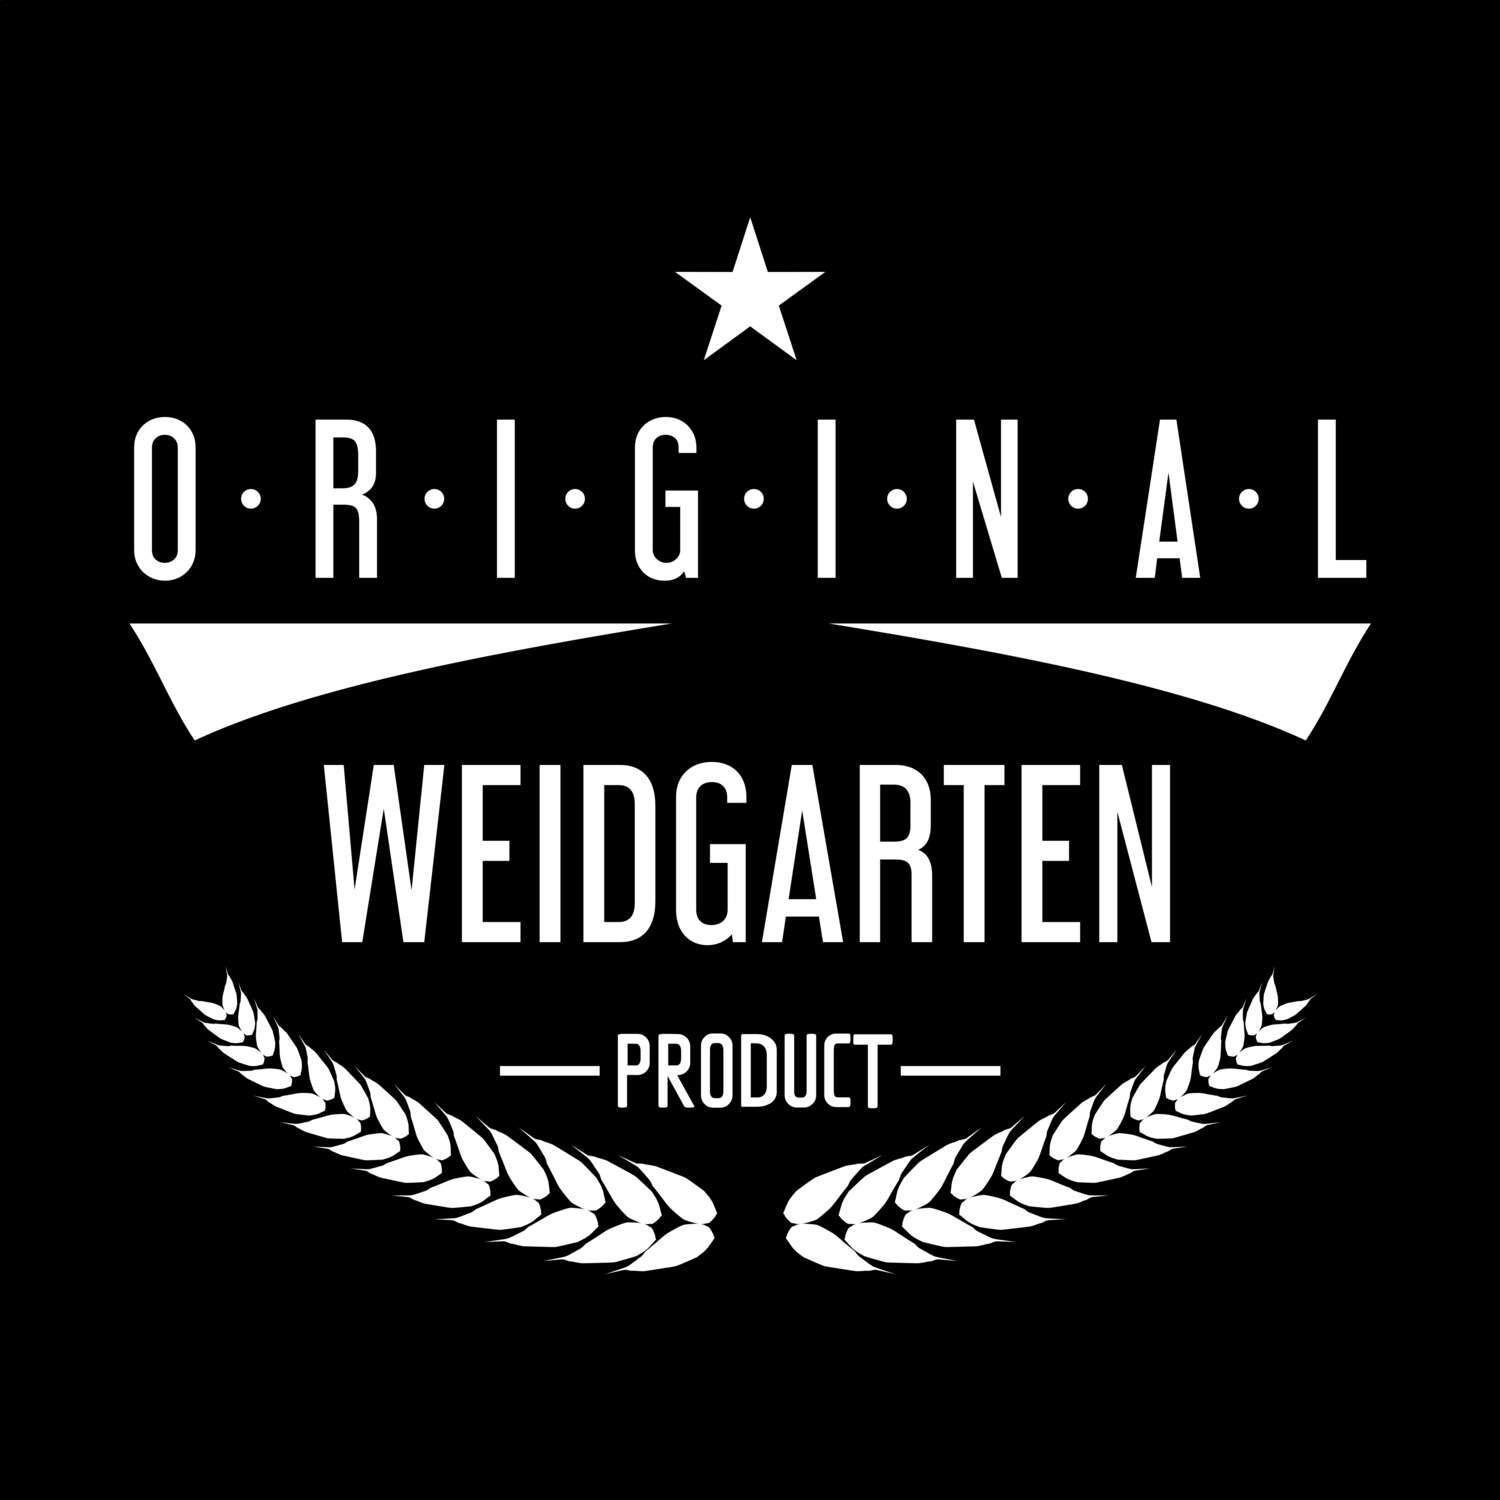 Weidgarten T-Shirt »Original Product«